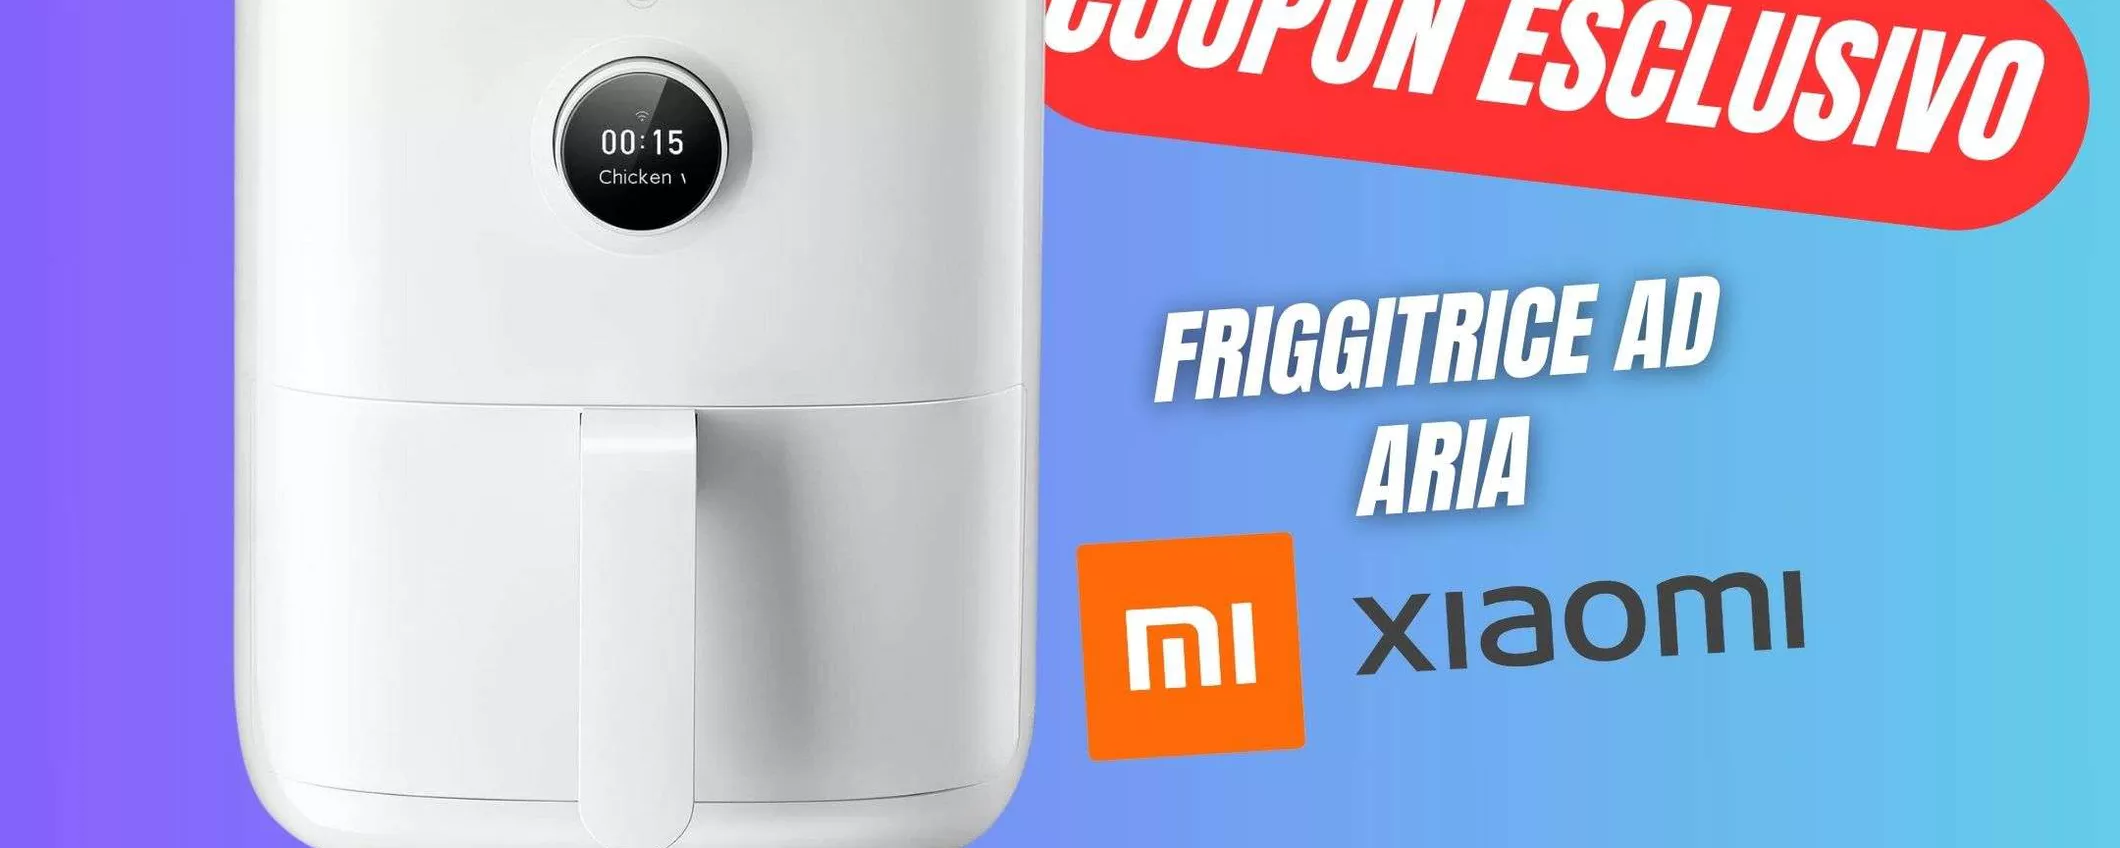 La bellissima Friggitrice ad Aria Xiaomi CROLLA a 63€ grazie al COUPON eBay!